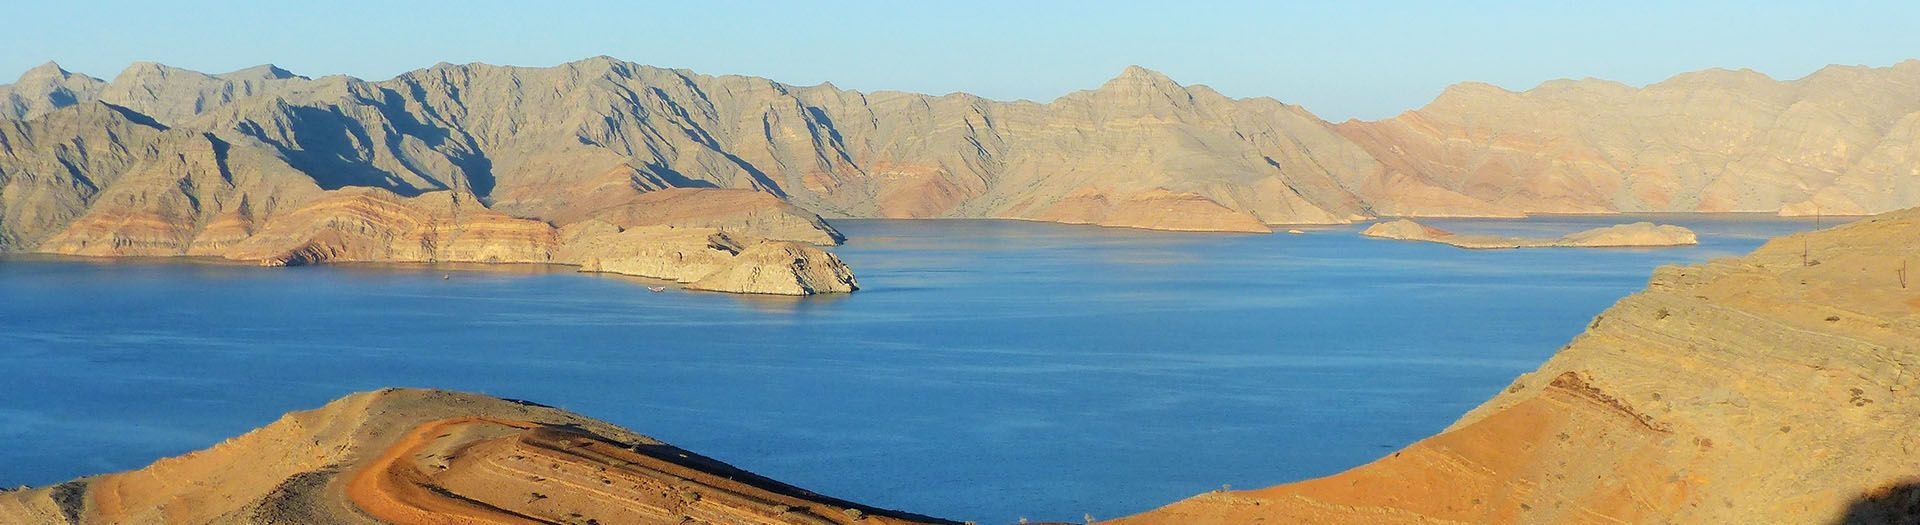 Guide de voyage à Oman péninsule Musandam